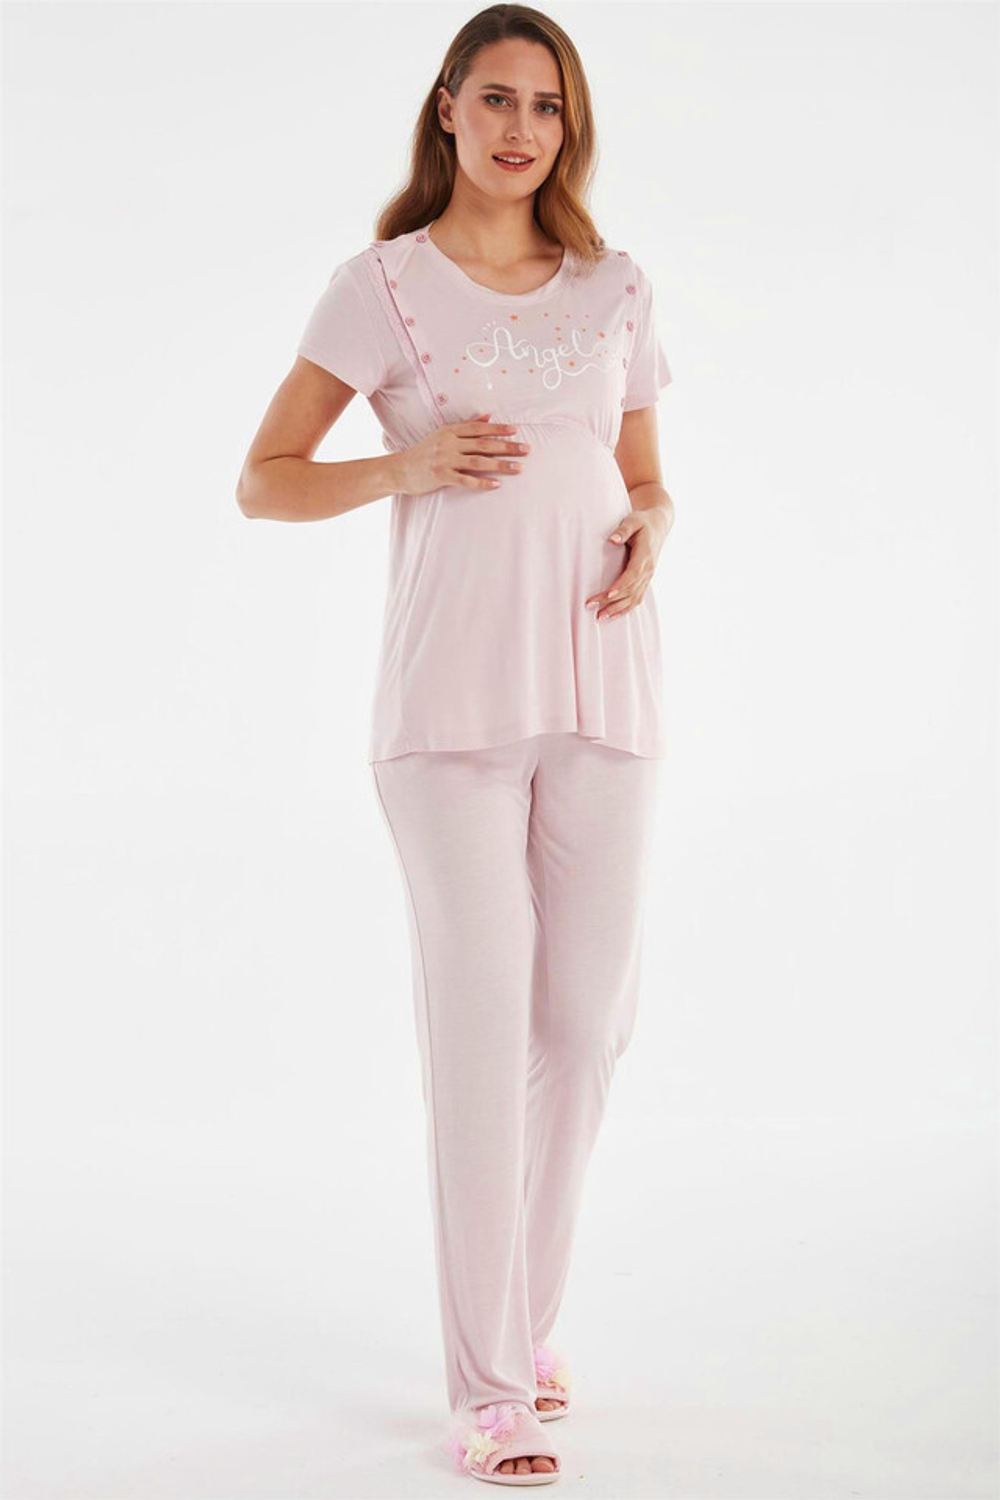 RELAX MODE / Пижама женская для беременных и кормящих с брюками - 10447